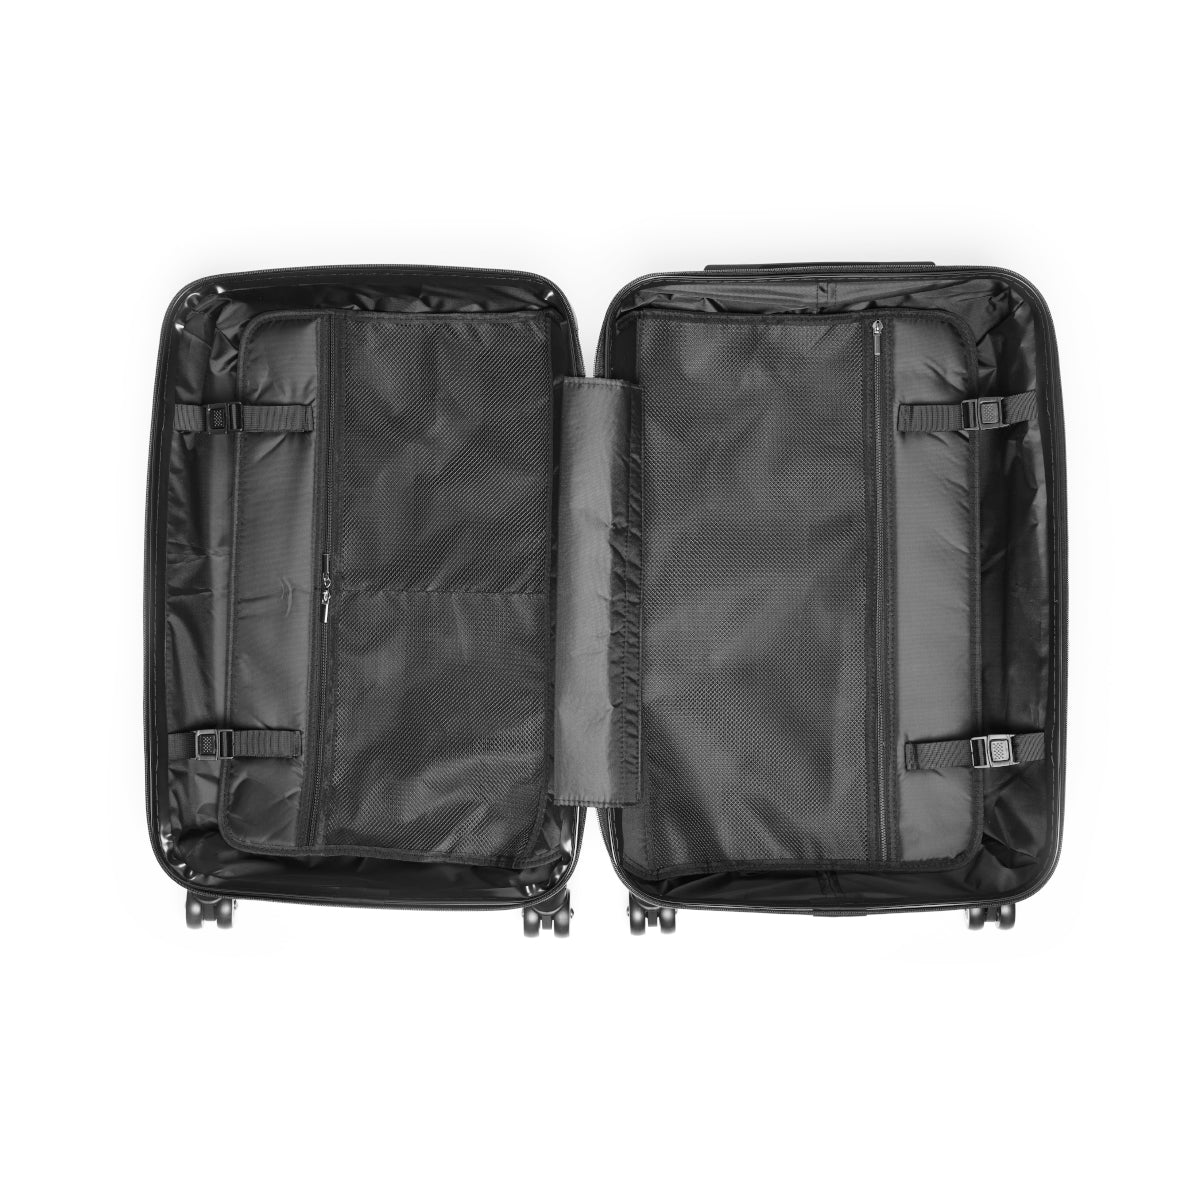 UNOBTCMAX Suitcases